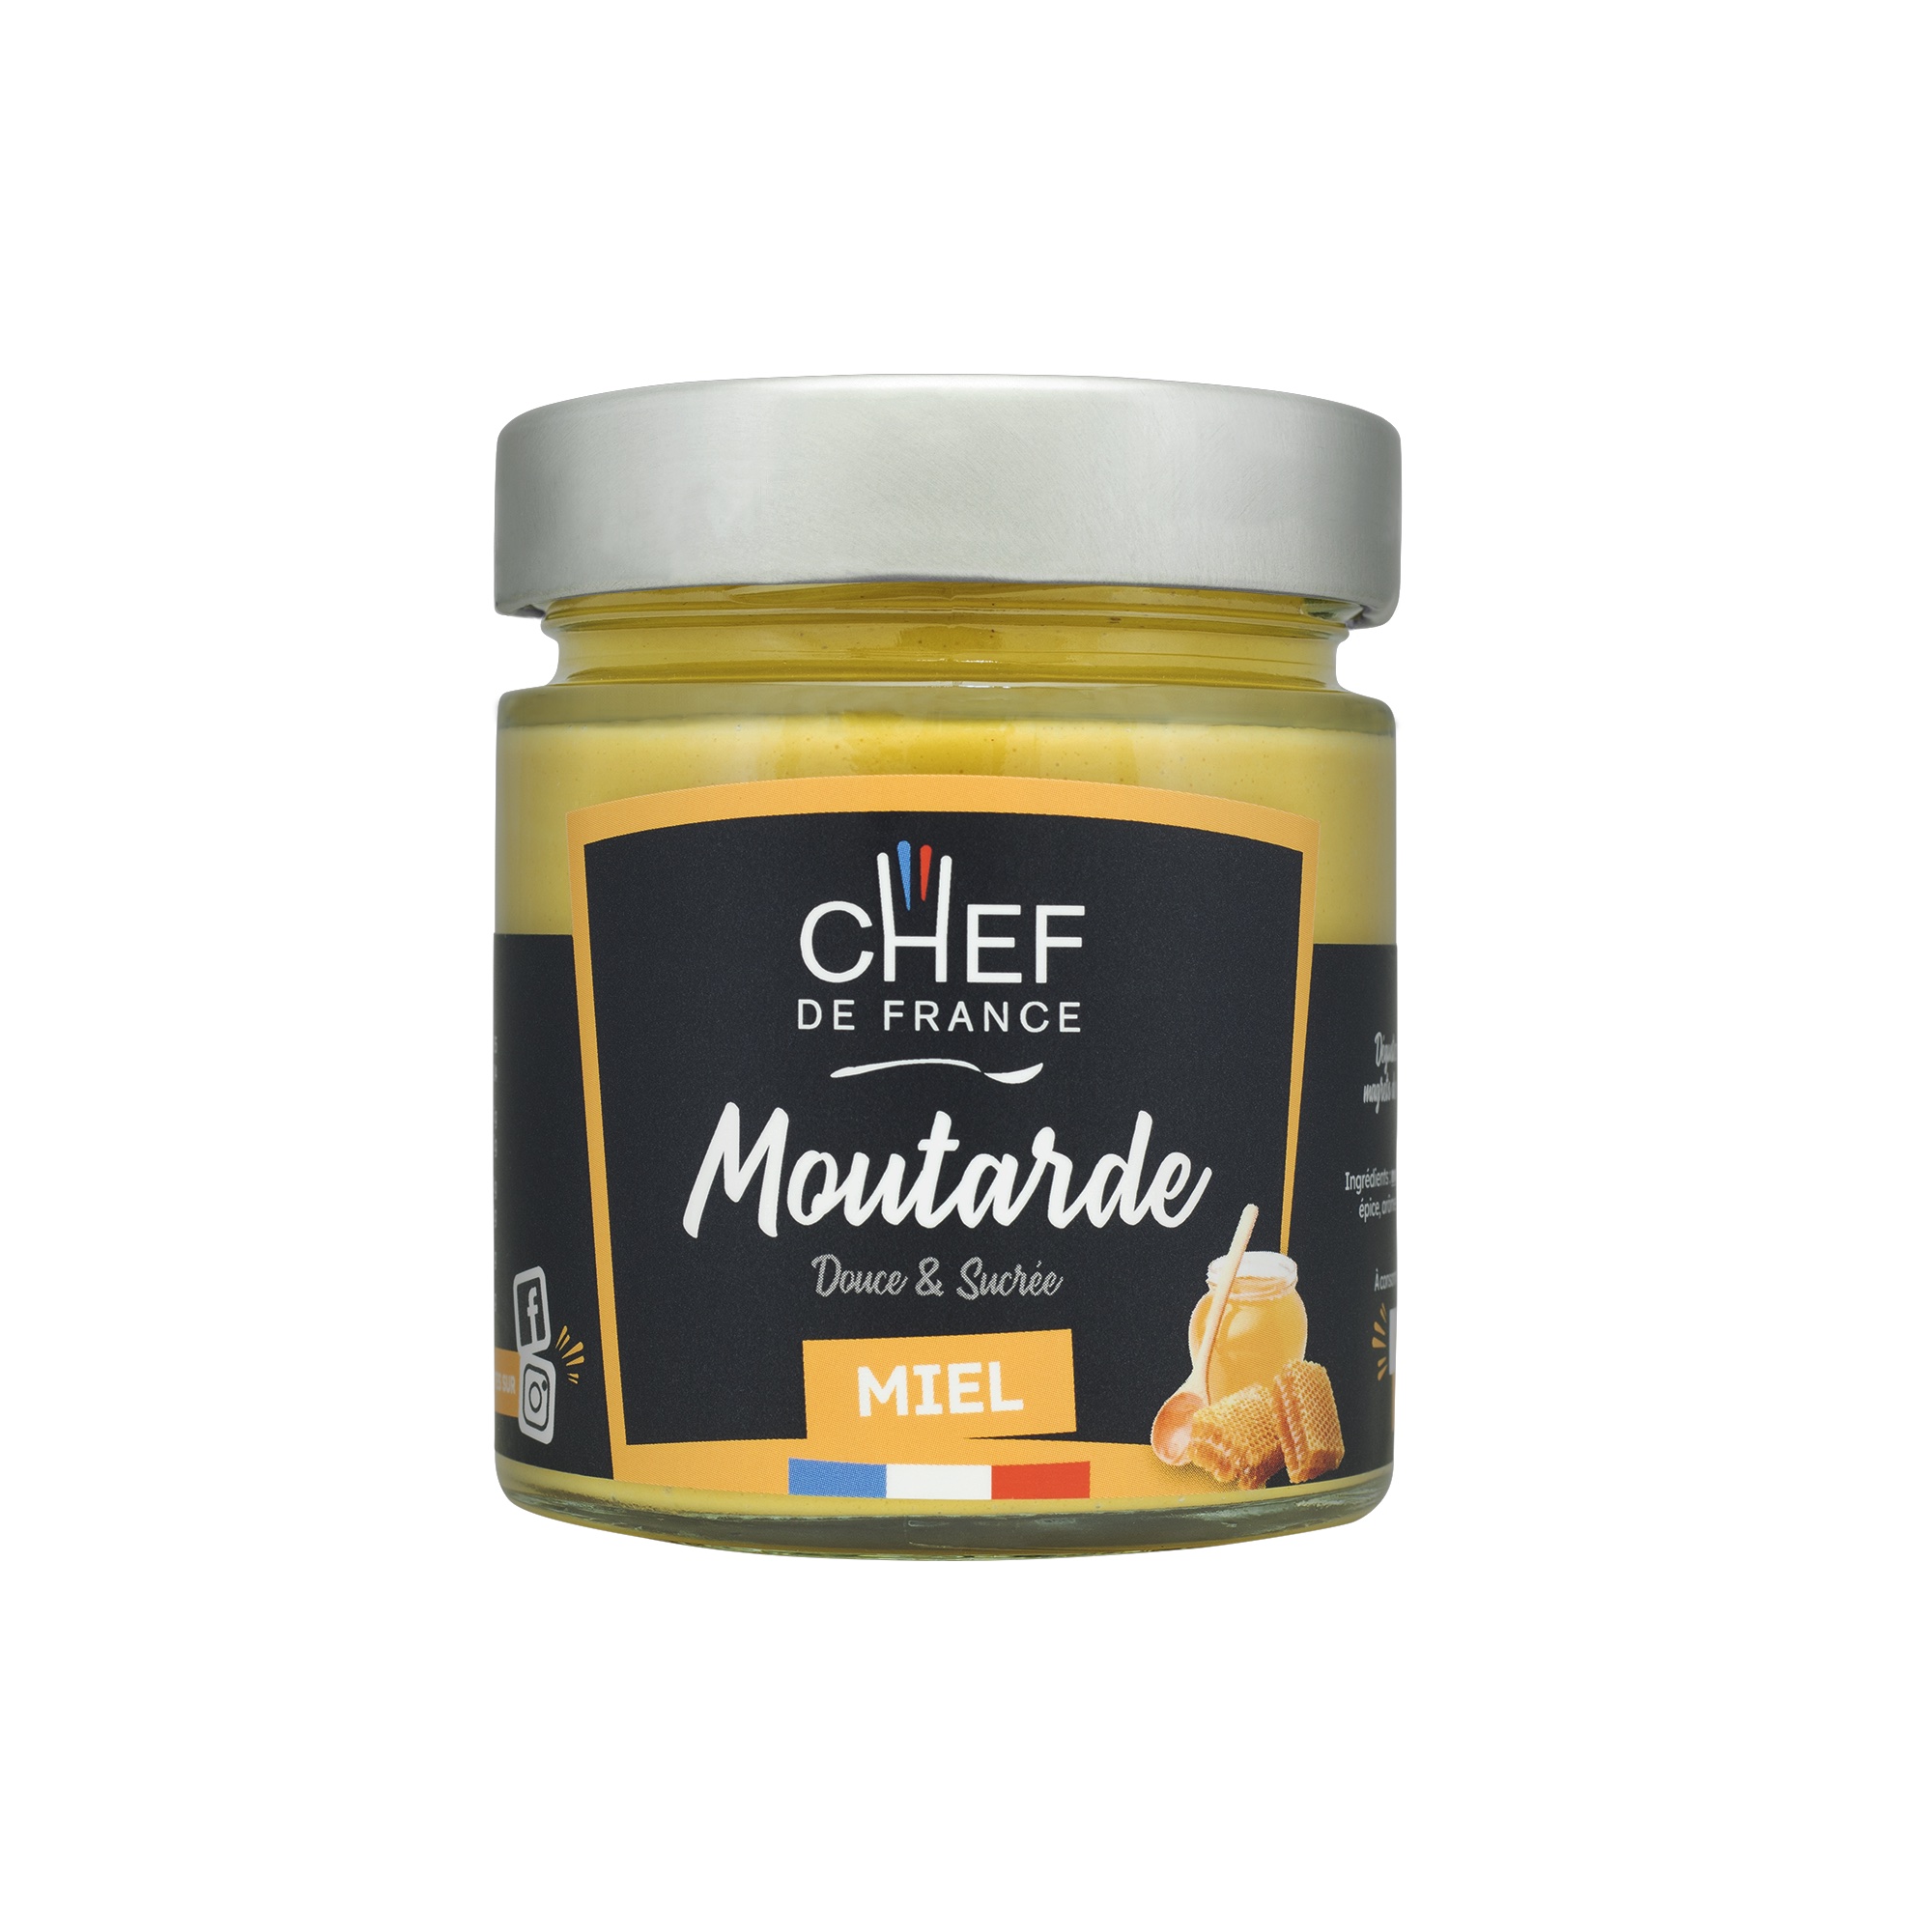 Moutarde au Miel 190g - Chef de France